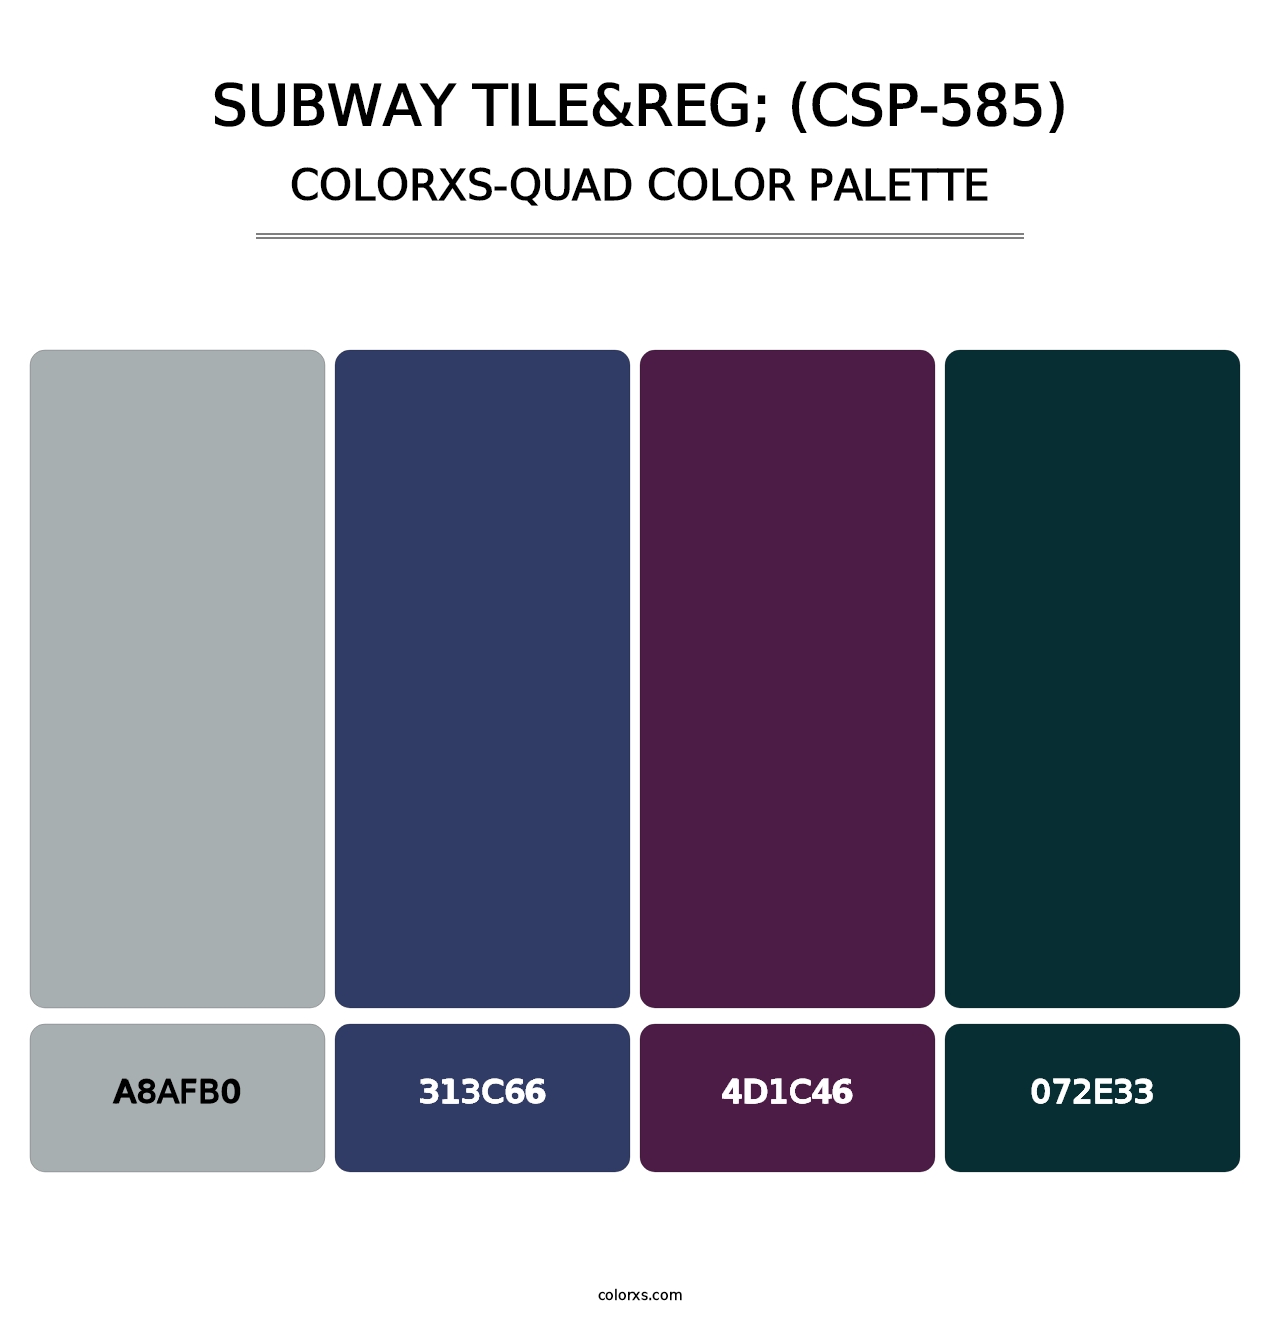 Subway Tile&reg; (CSP-585) - Colorxs Quad Palette